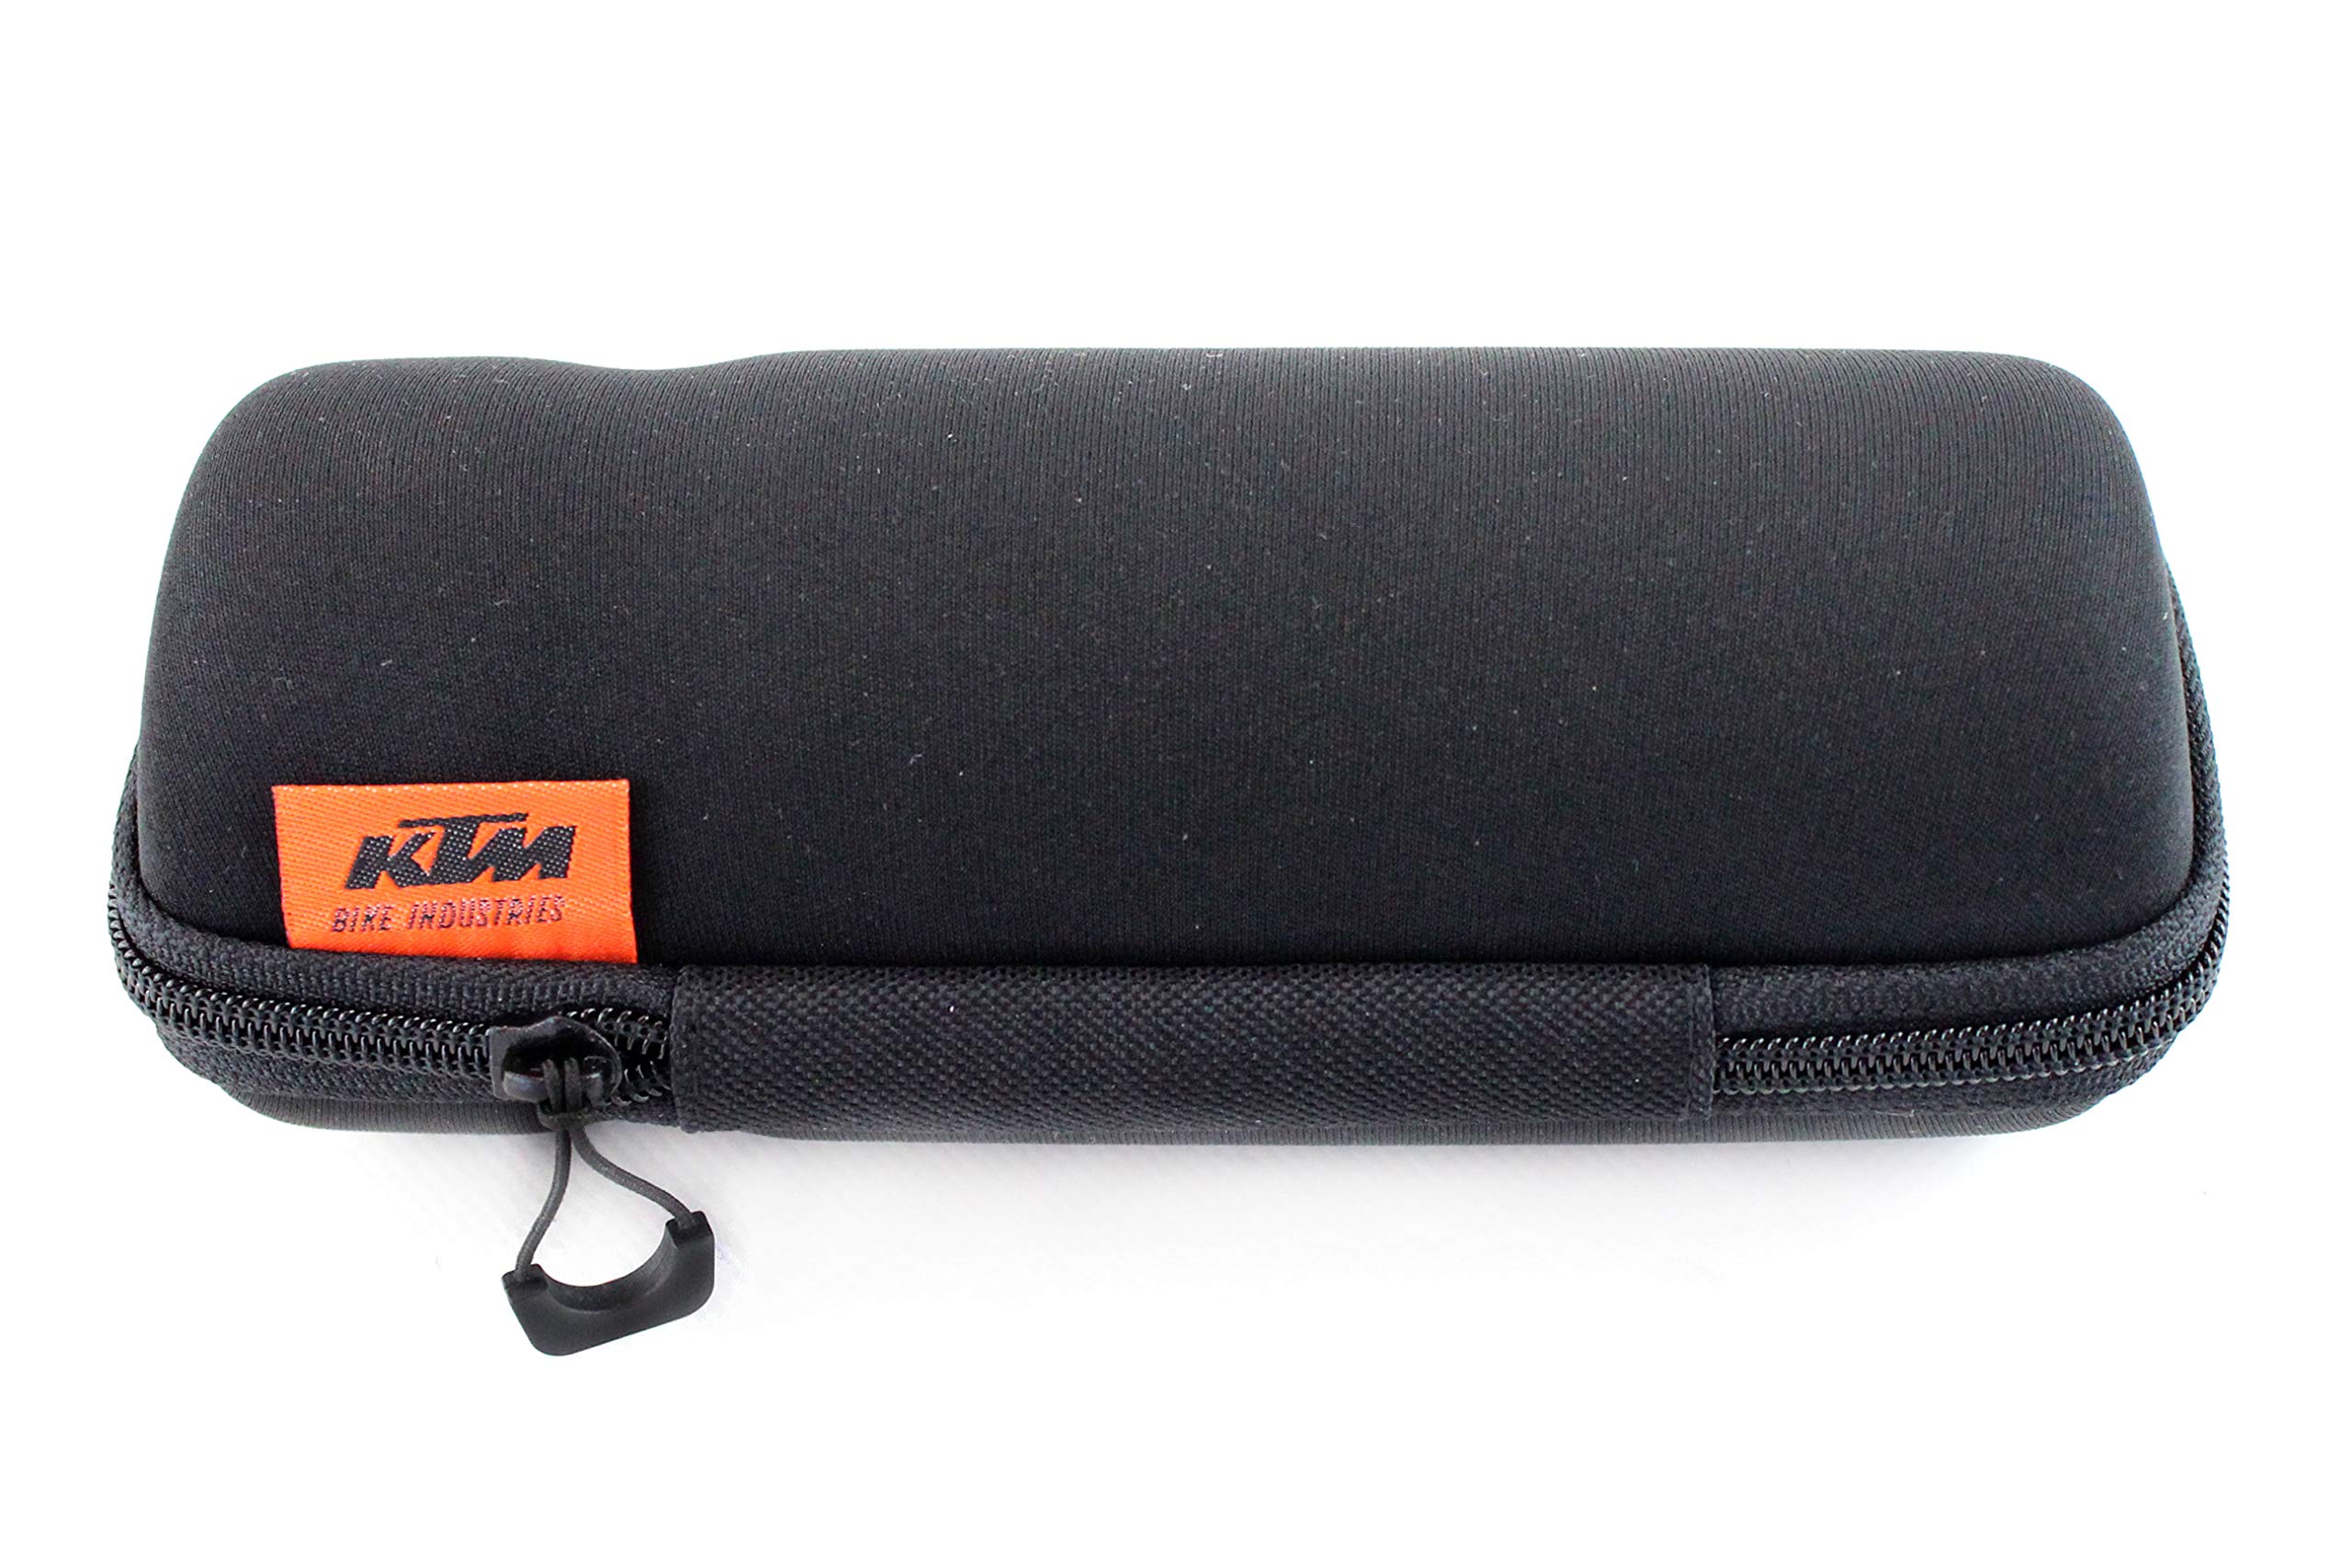 KTM Fahrrad Werkzeugbox, Tasche für kleine Gegenstände, Durchmesser 72mm, passt in Flaschenhalter, Farbe schwarz, wasserabweisend